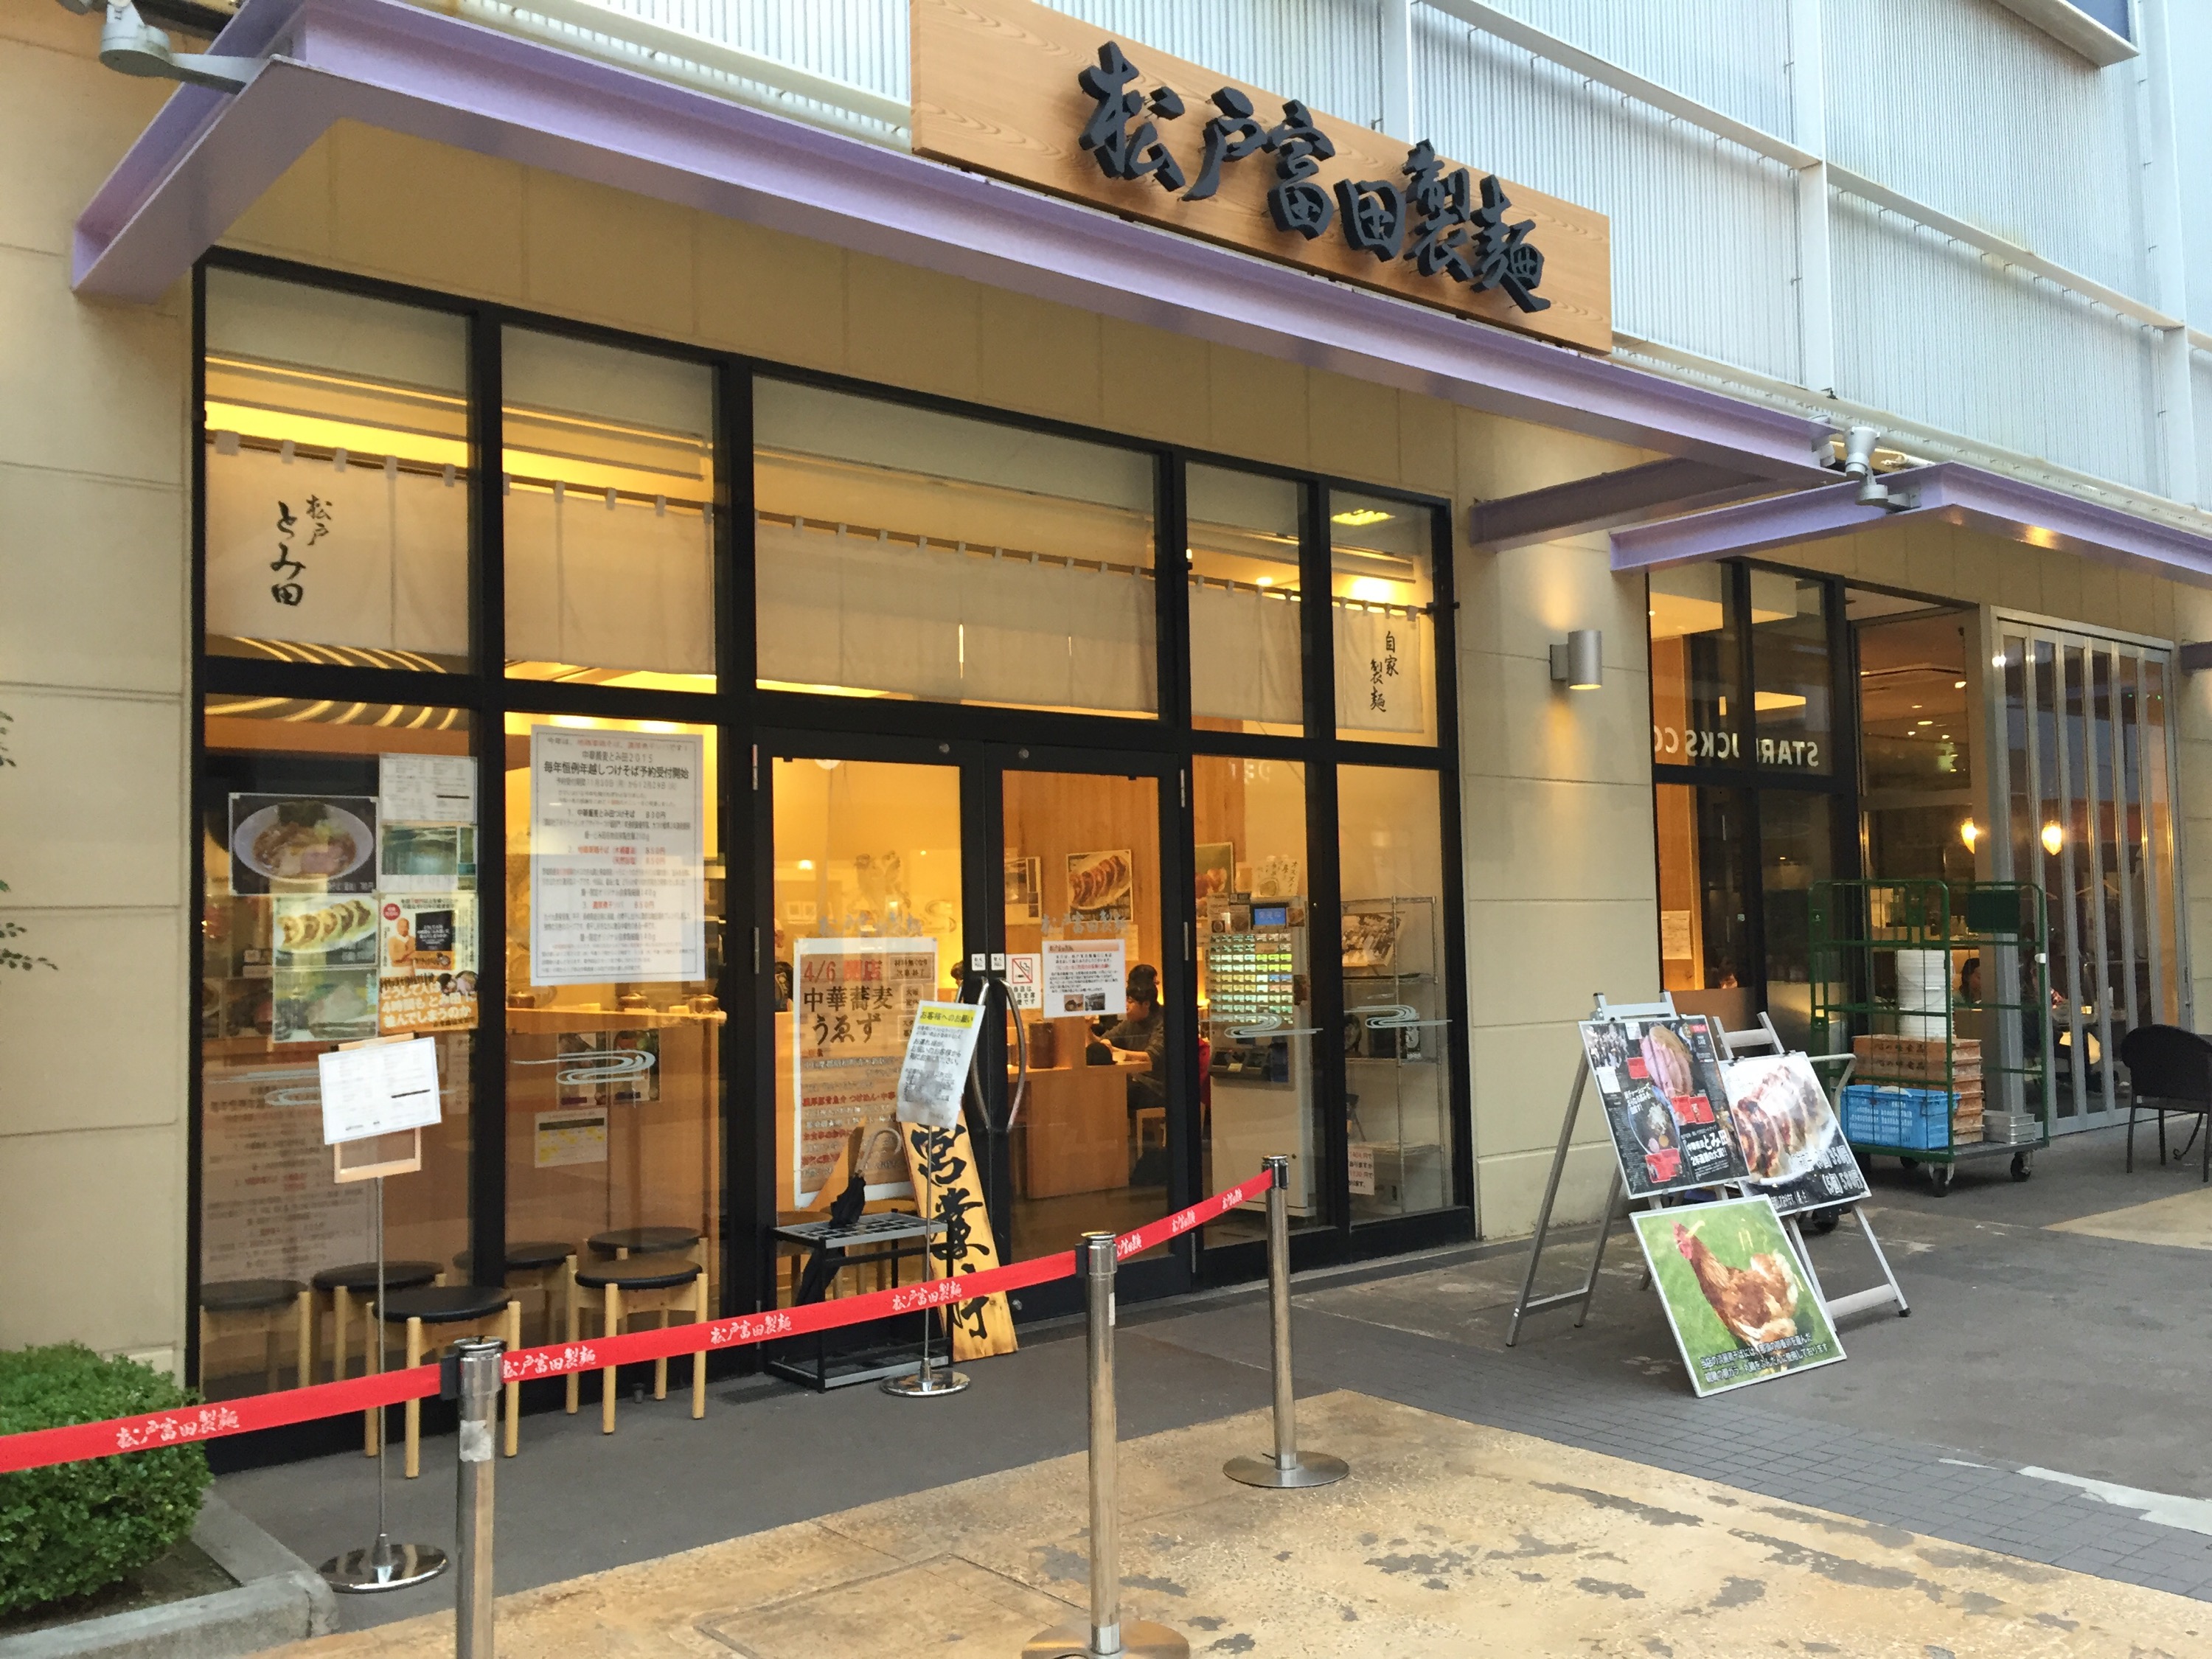 松戸富田製麺 ららぽーとTOKYO-BAY店の外観と店内